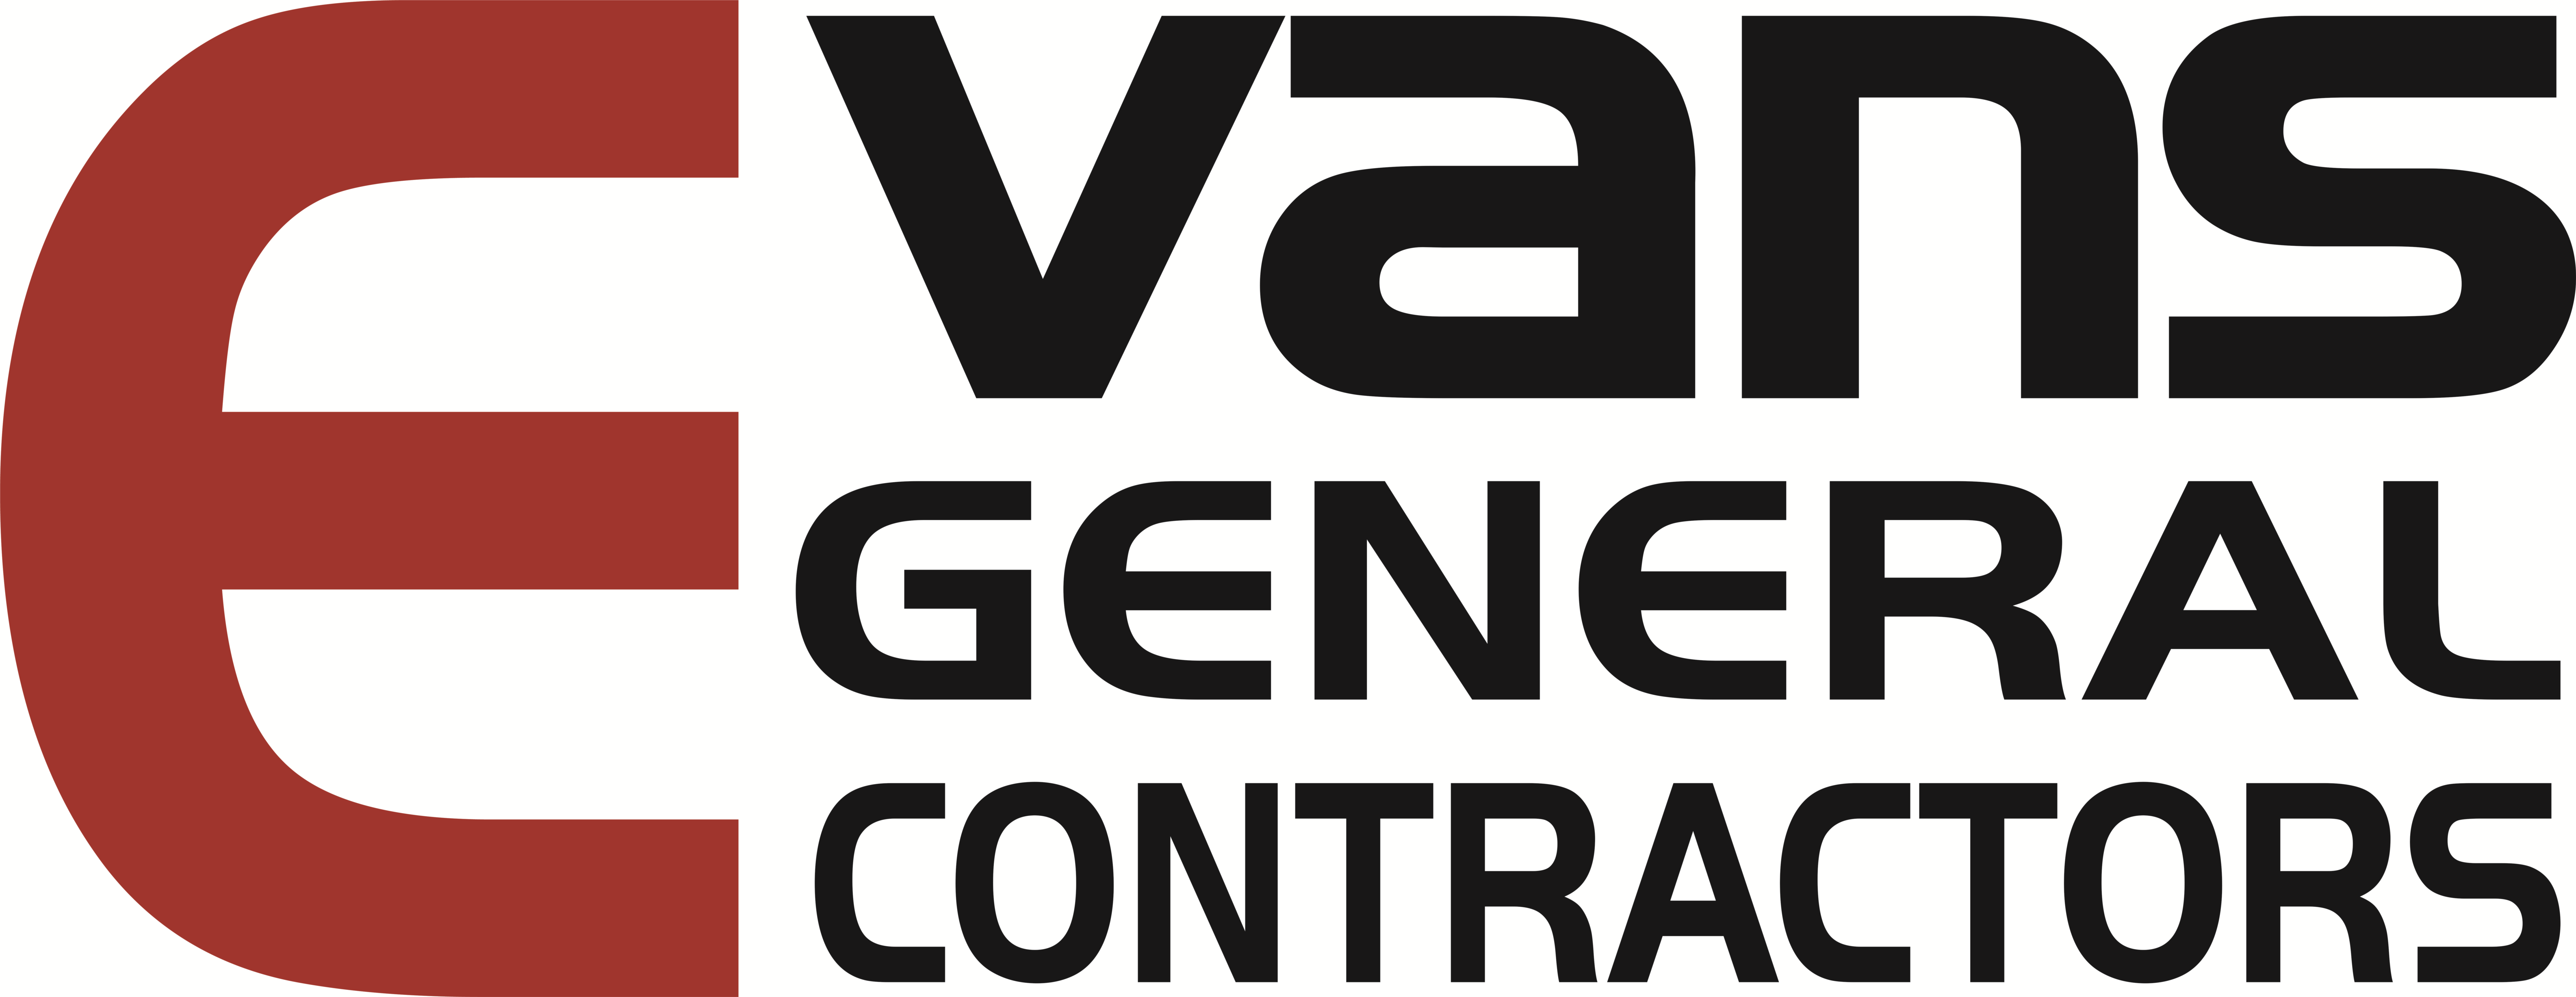 Evans General Contractors, LLC Company Logo